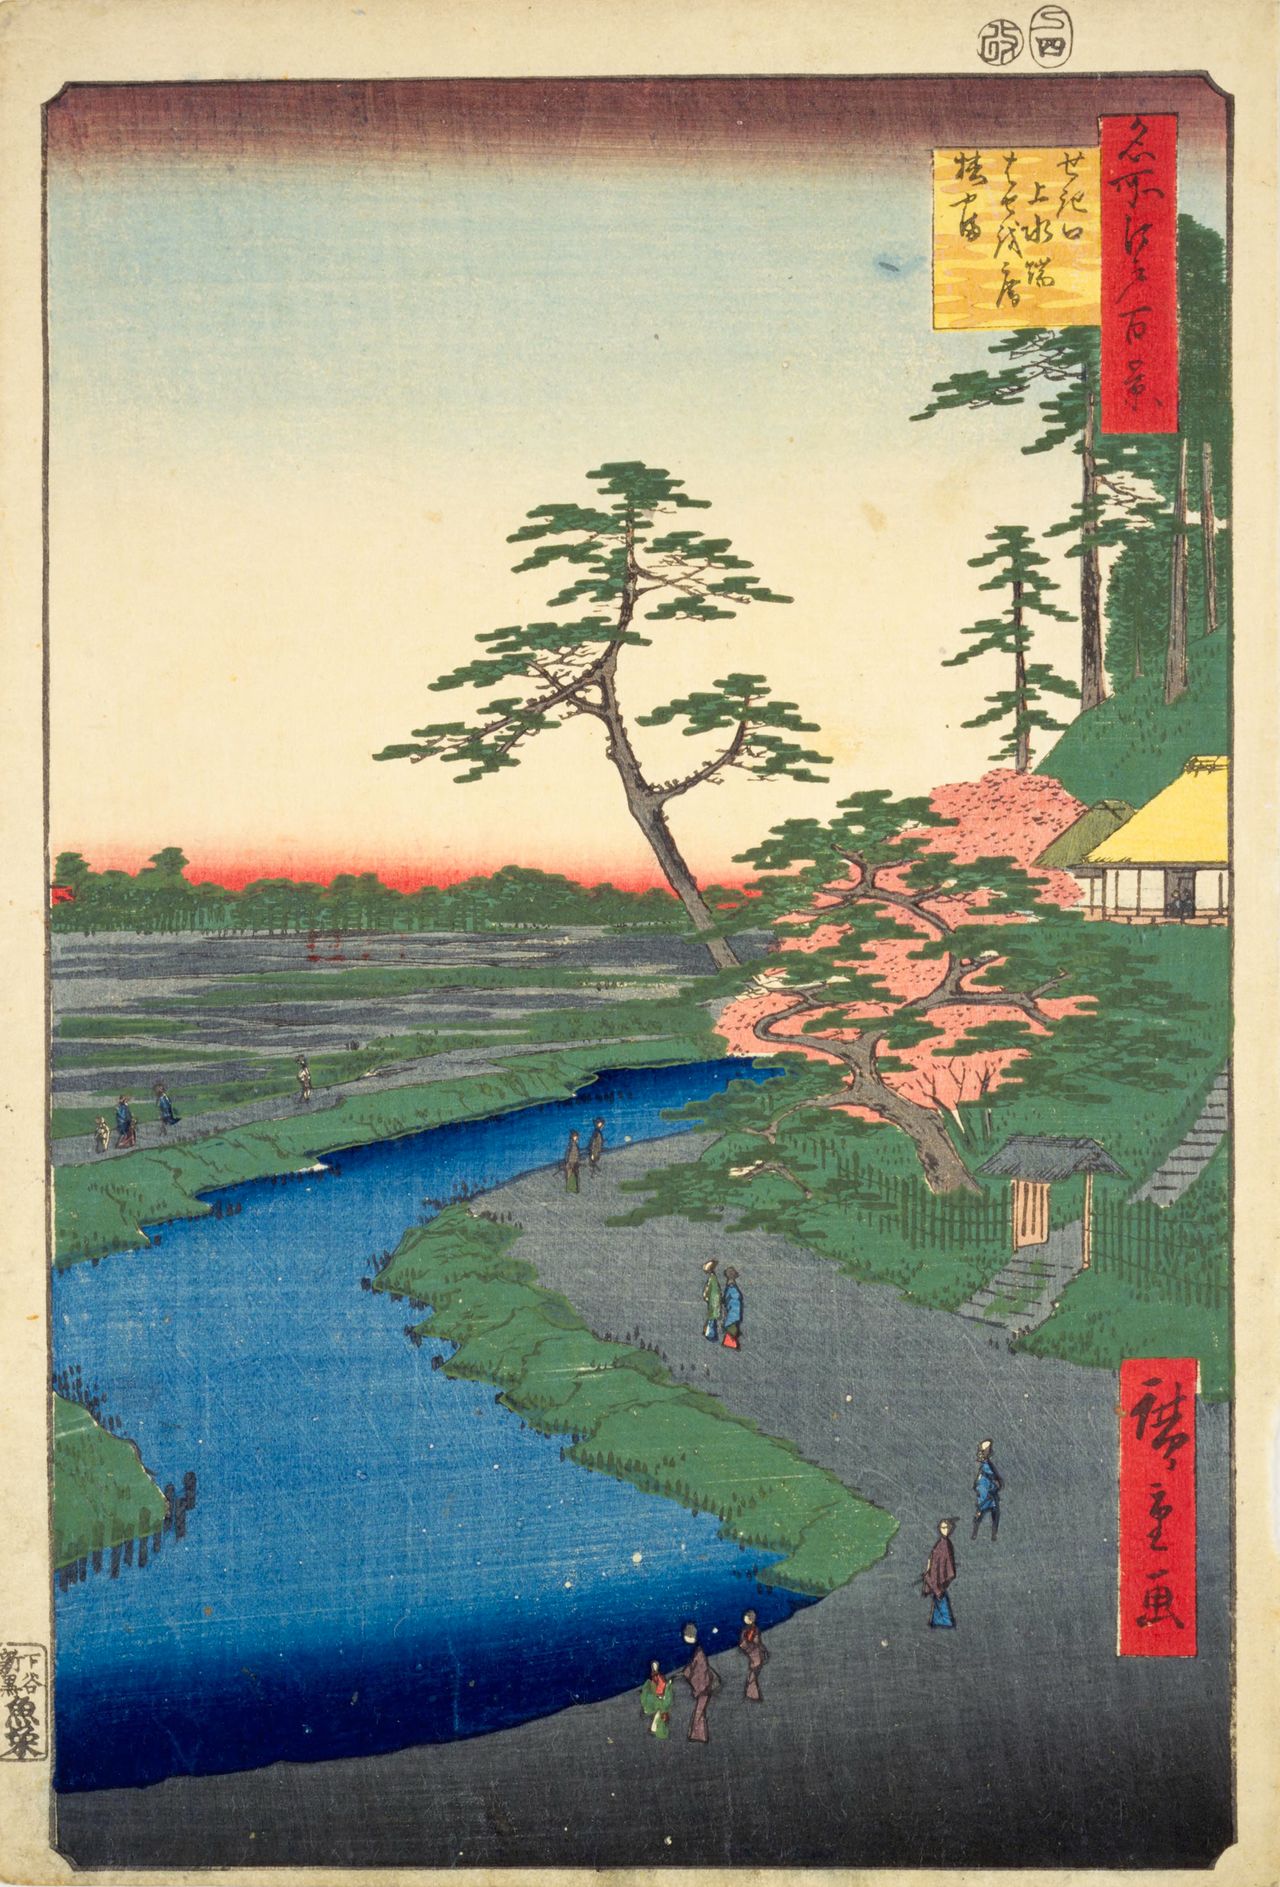 La ermita de Bashō en la colina de las camelias junto al acueducto de Sekiguchi es una de las obras que integra la serie Cien famosas vistas de Edo, de Utagawa Hiroshige (propiedad de la Biblioteca de la Dieta de Japón). En el título en japonés, Sekiguchi Jōsui bata Haseo-an Tsubakiyama, ‘Haseo’ haría referencia a Matsuo Bashō, mientras que ‘jōsui’’ aludiría al acueducto de Kanda. La colina que aparece a la derecha es Tsubakiyama. En la actualidad, Sekiguchi Bashōan, la ermita del poeta, se conserva precisamente en las inmediaciones del Hotel Chinzansō Tōkyō. 